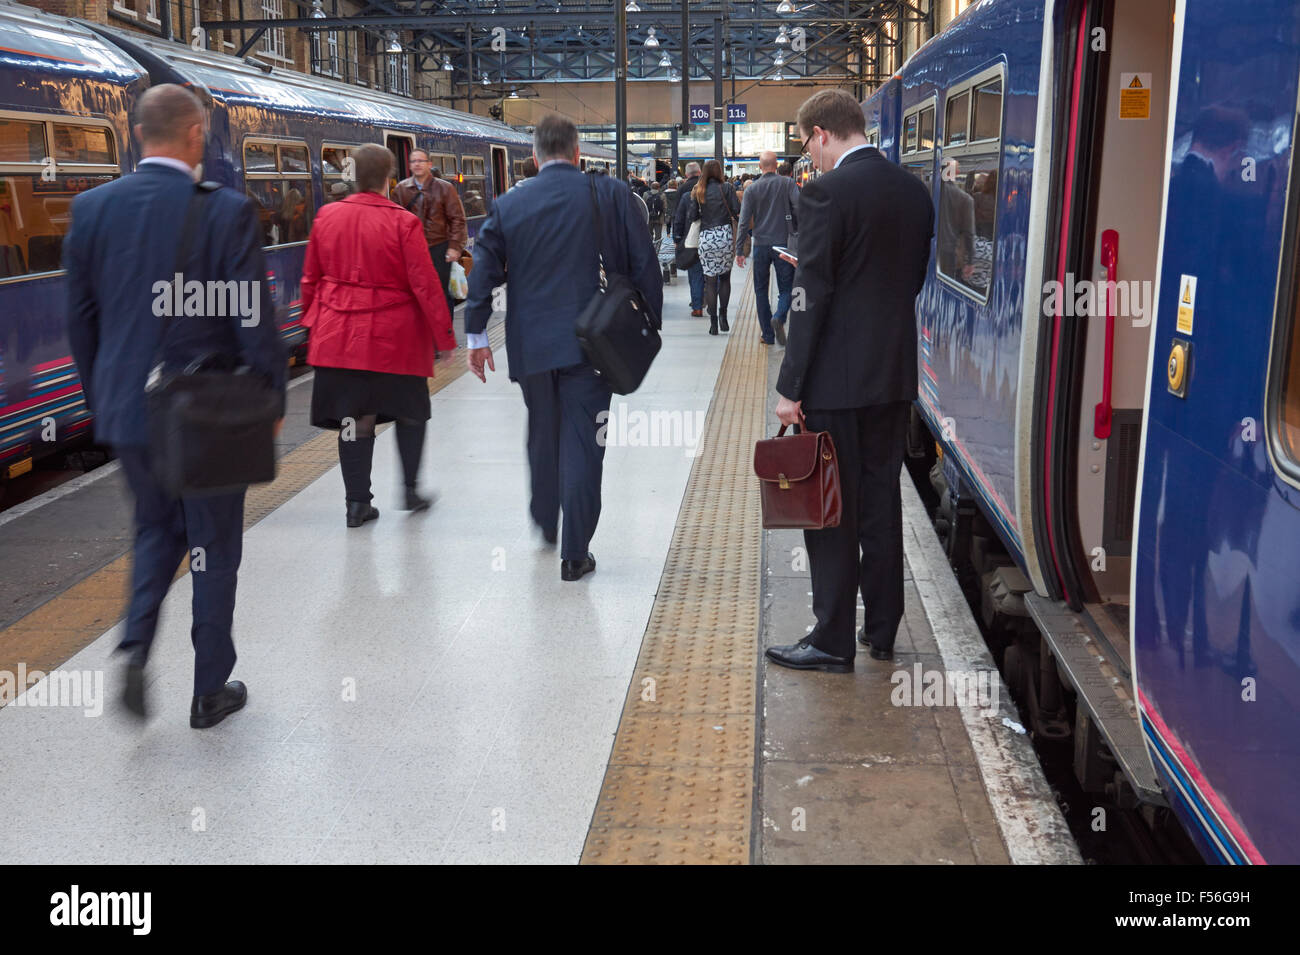 Les passagers qui quittent le train à King's Cross, la gare de Londres Angleterre Royaume-Uni UK Banque D'Images